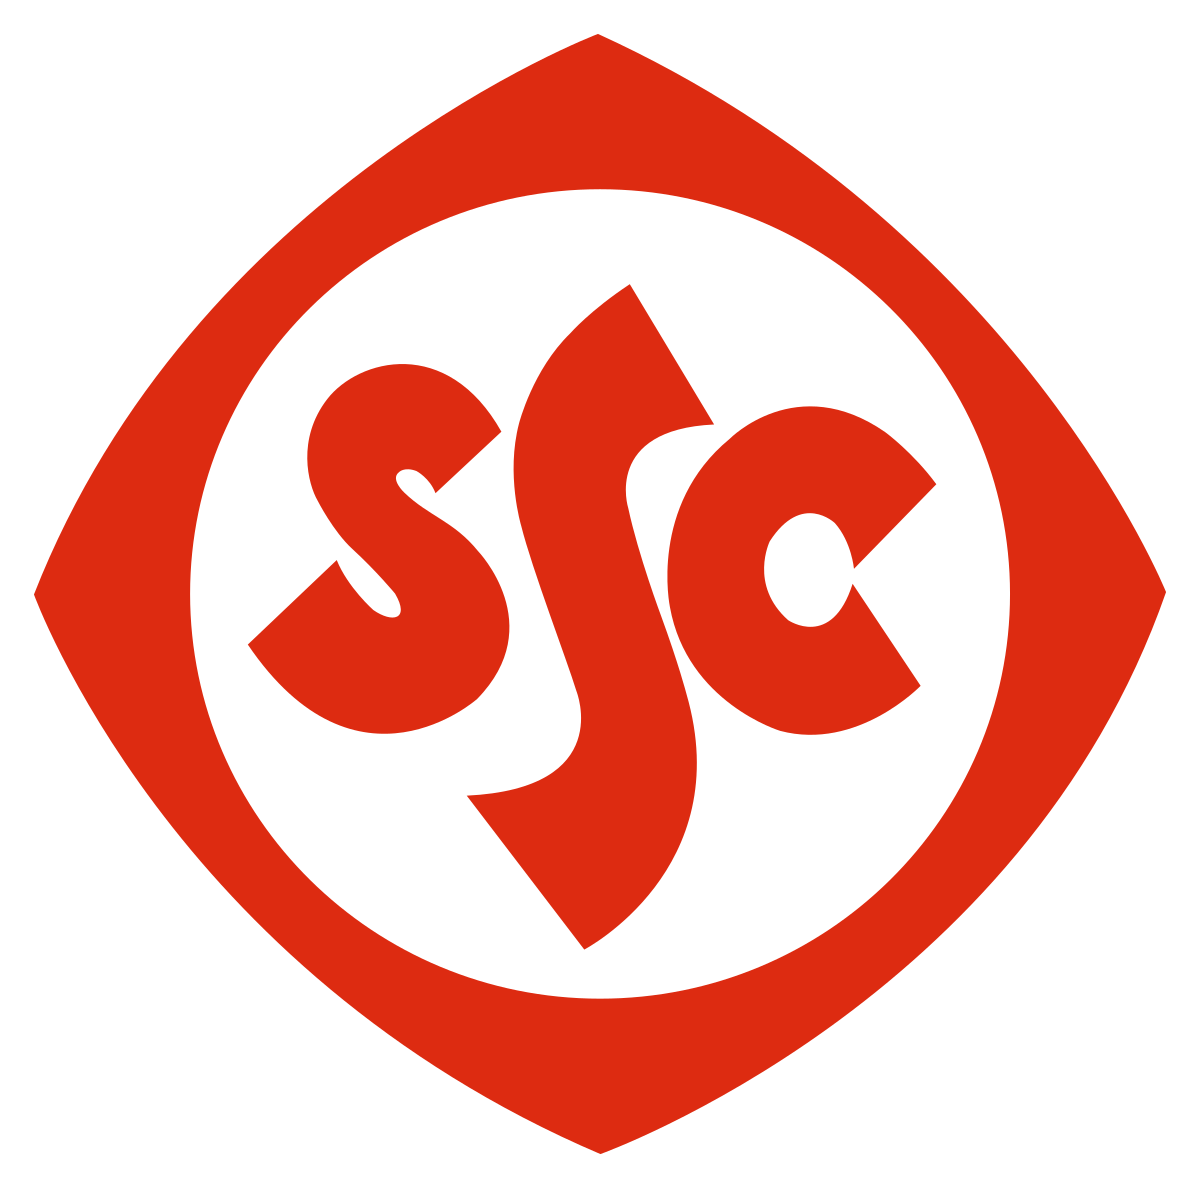 Logo Stuttgarter SC 1900 e.V.